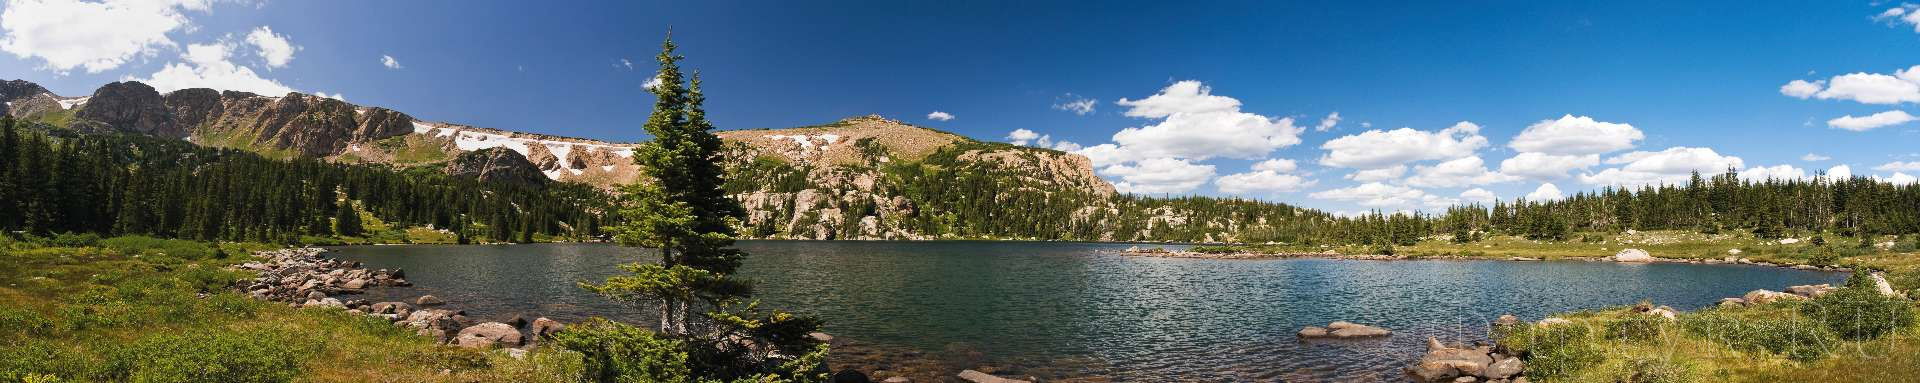 Озеро в Скалистых горах, Колорадо